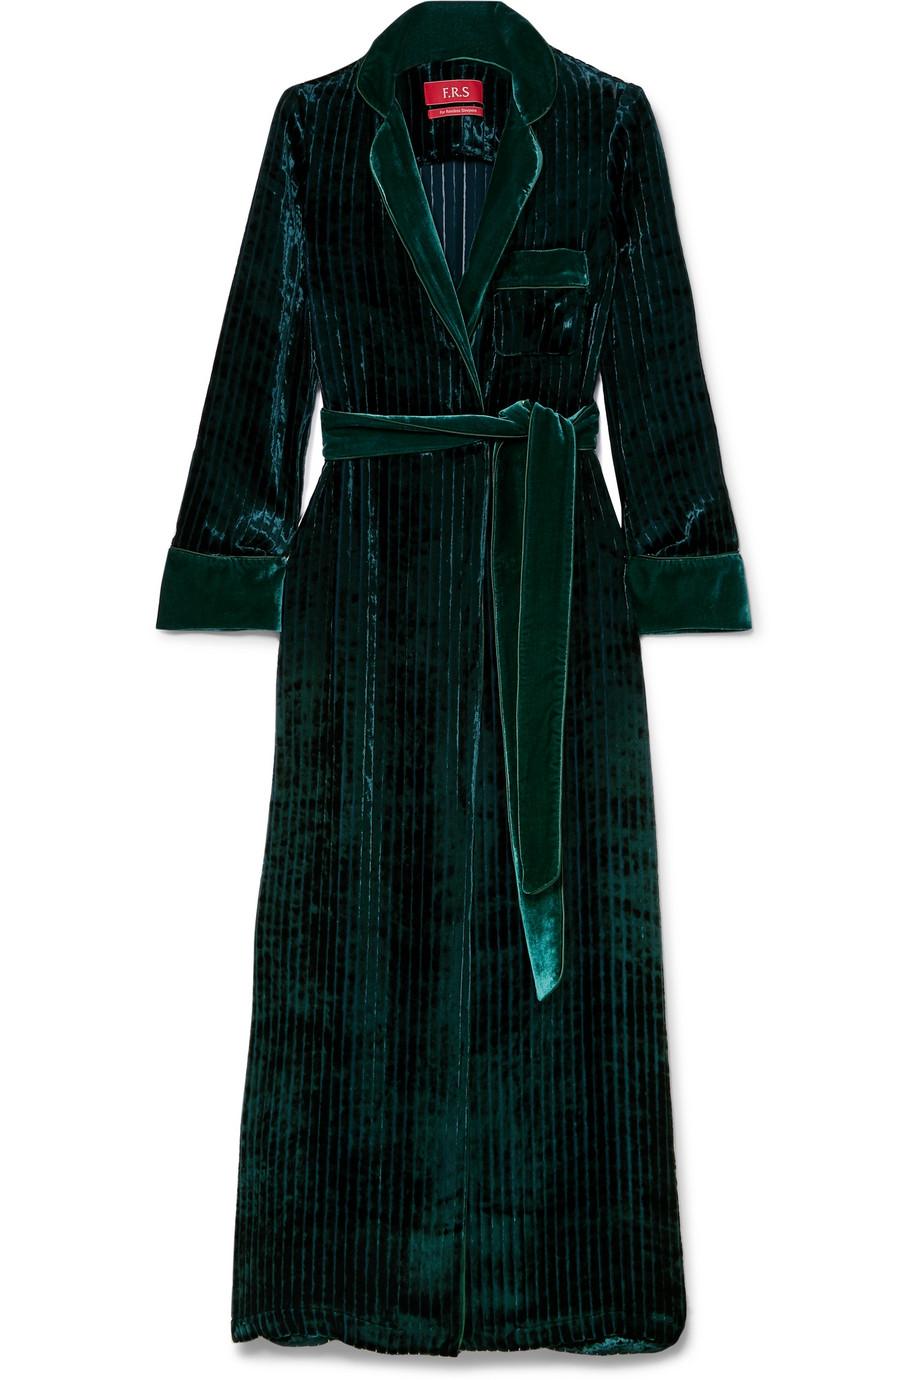 NEW F.R.S For Restless Sleepers FRS Emerald Green Velvet Robe S For Sale 2